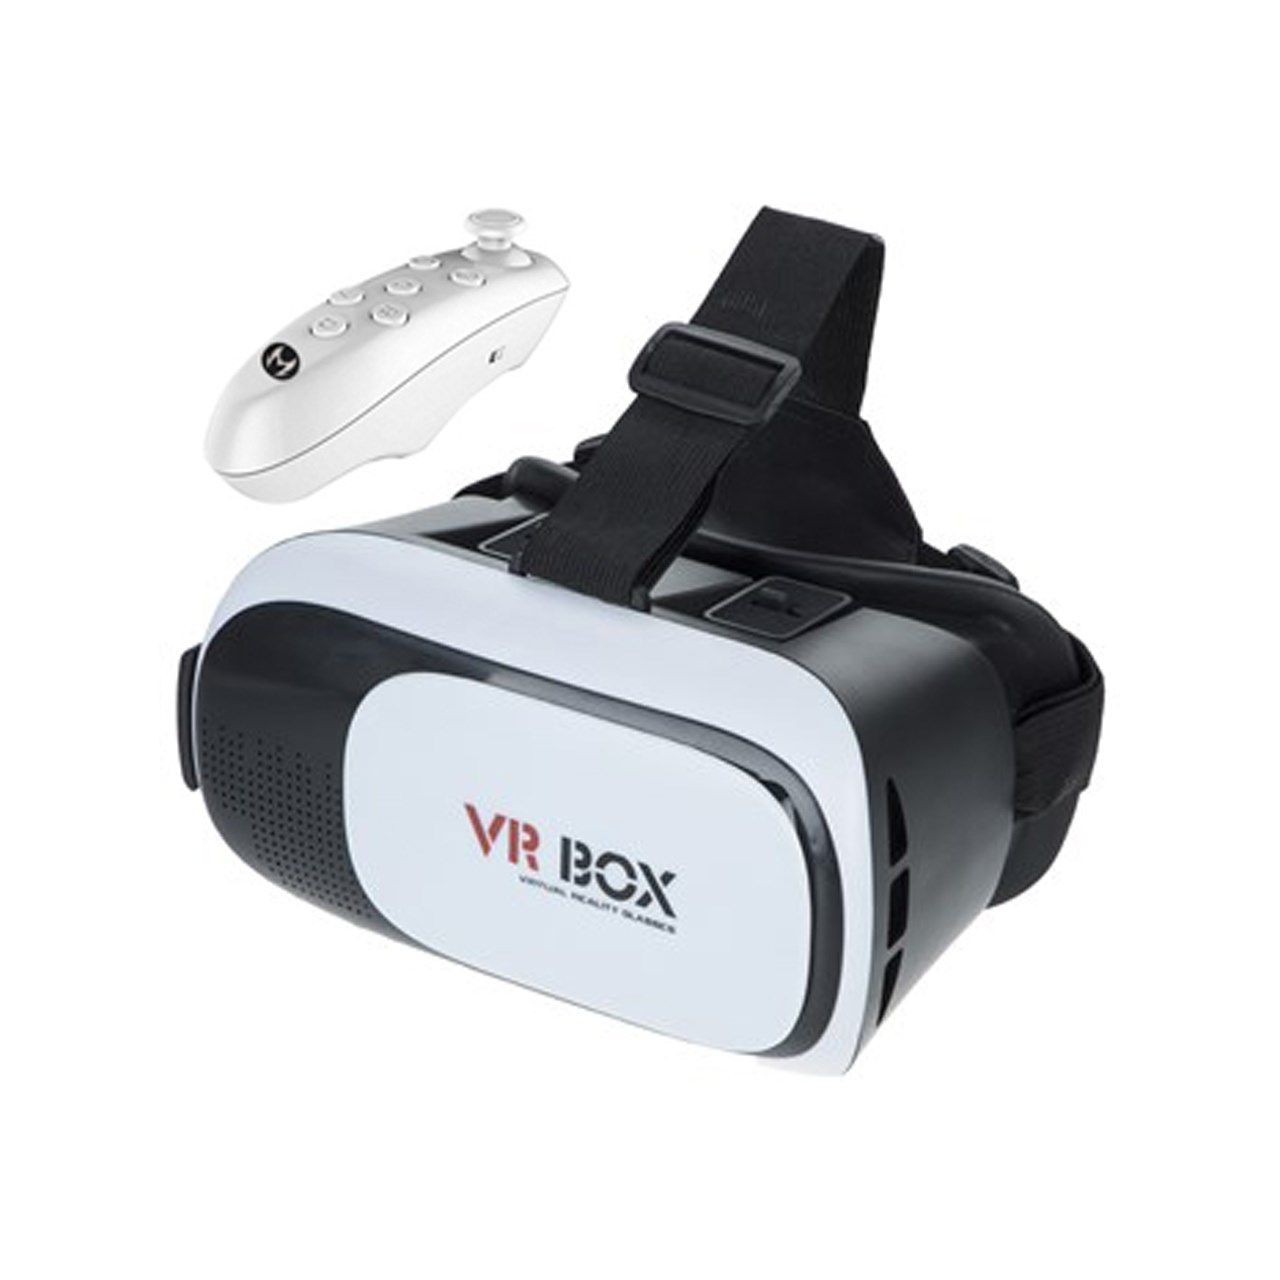 هدست واقعیت مجازی وی آر باکس مدل VR Box با ریموت کنترل